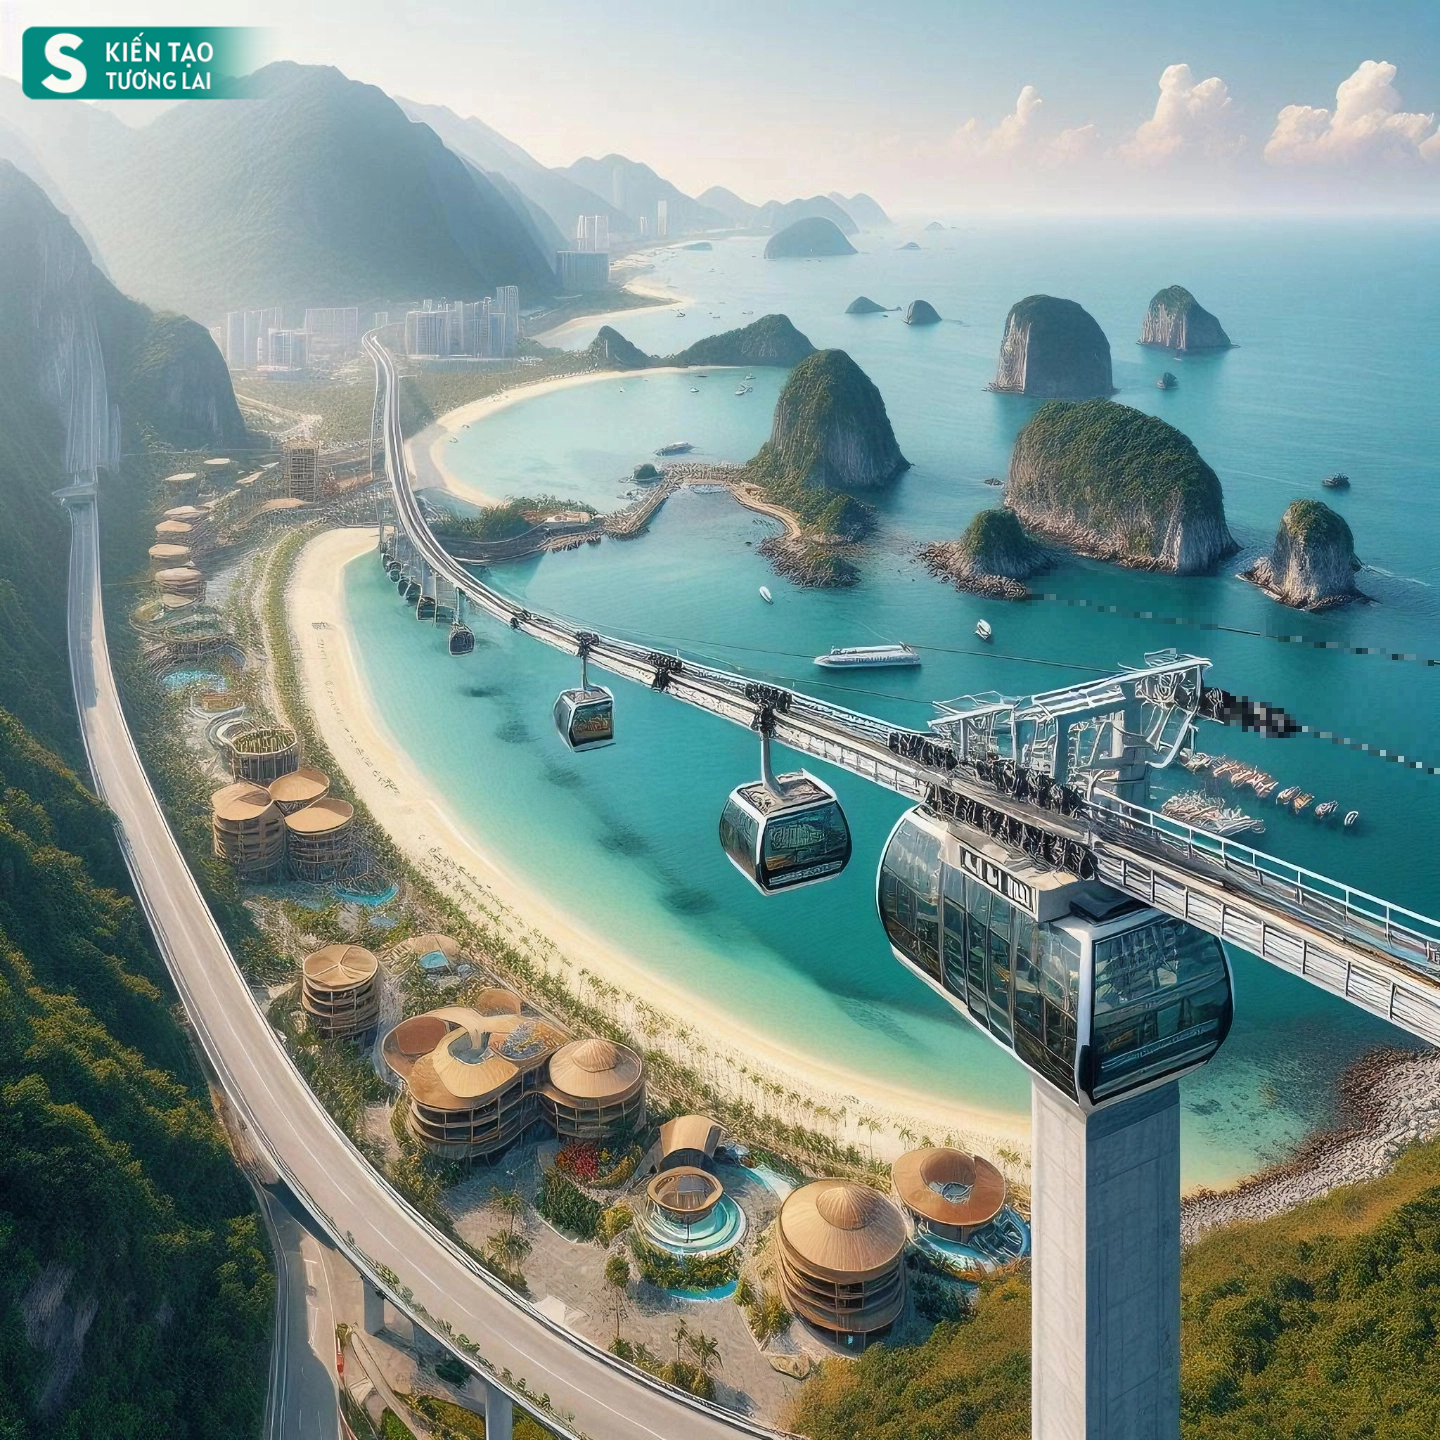 Thành phố duy nhất ở Việt Nam giáp Trung Quốc có biển, tương lai có sân bay taxi, đường sắt hiện đại- Ảnh 11.